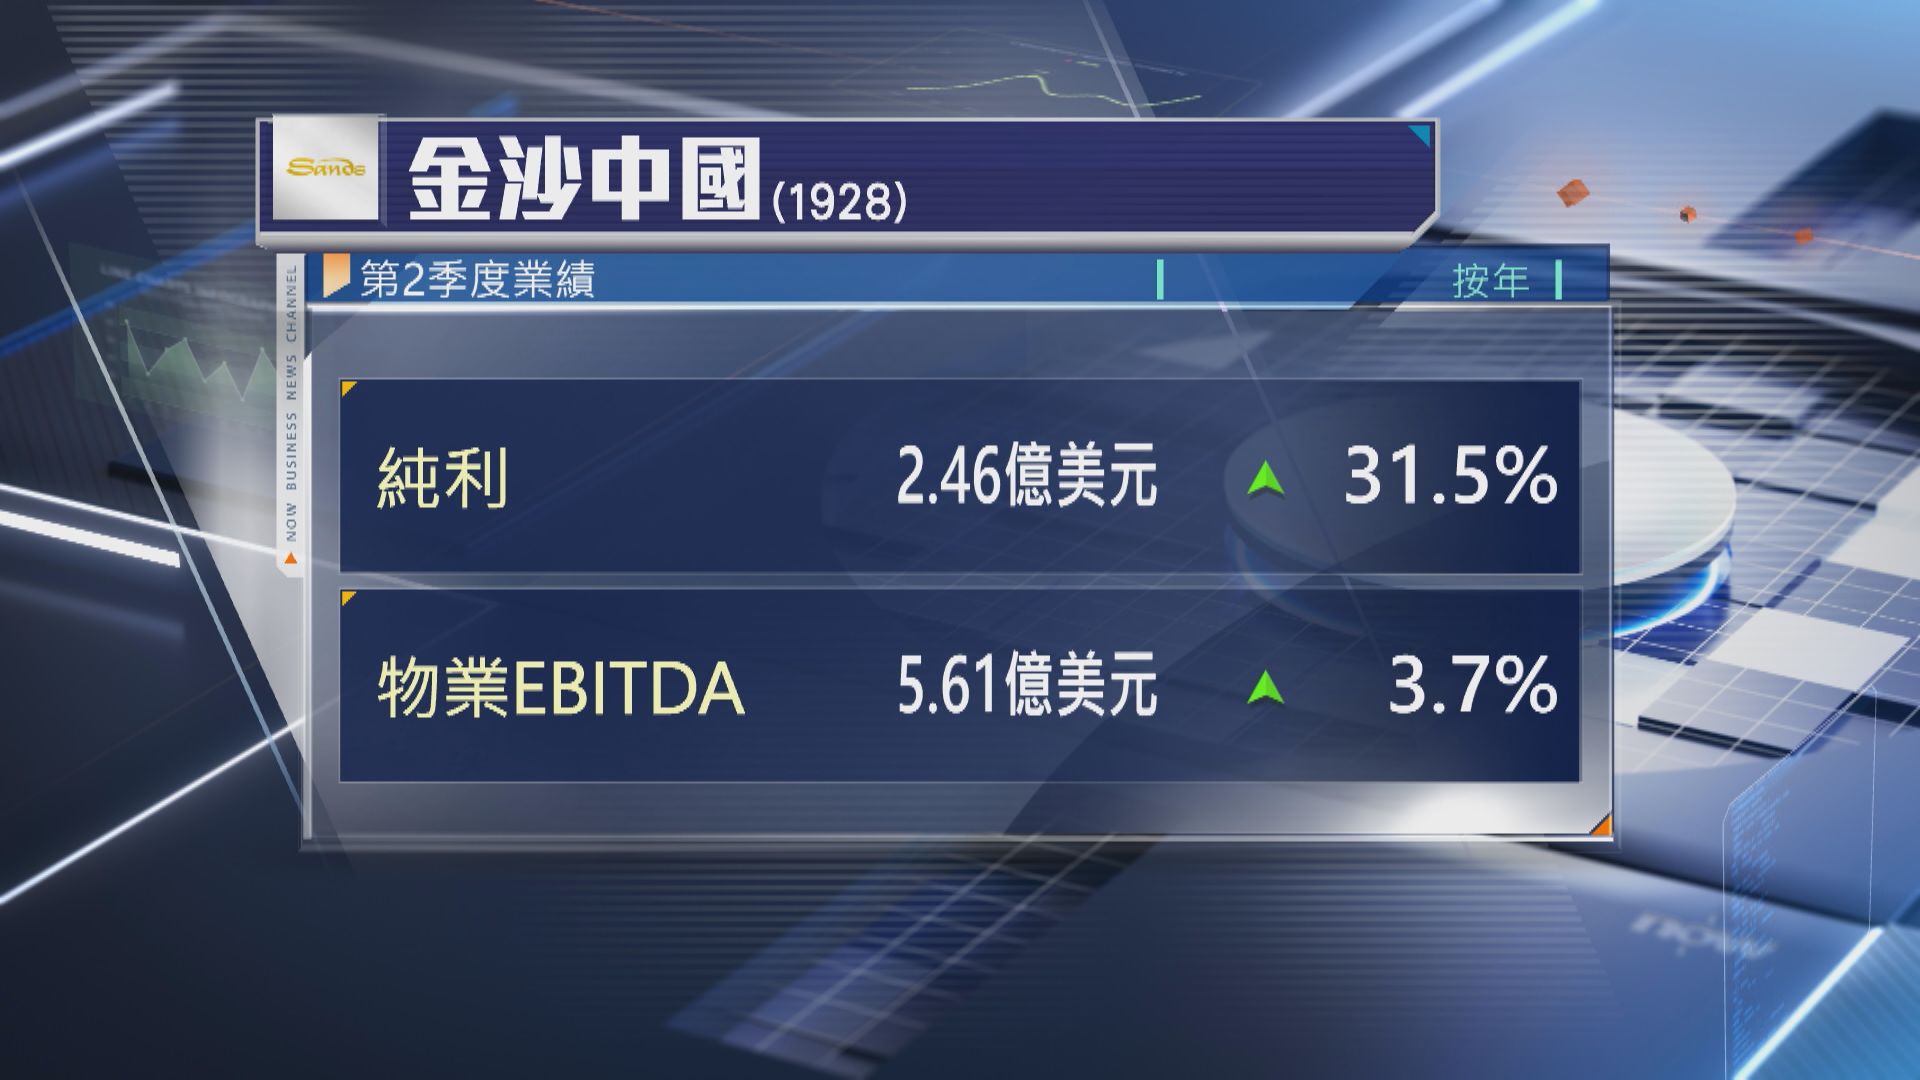 【賭股業績】金沙上季經調整EBITDA按年升3.7%